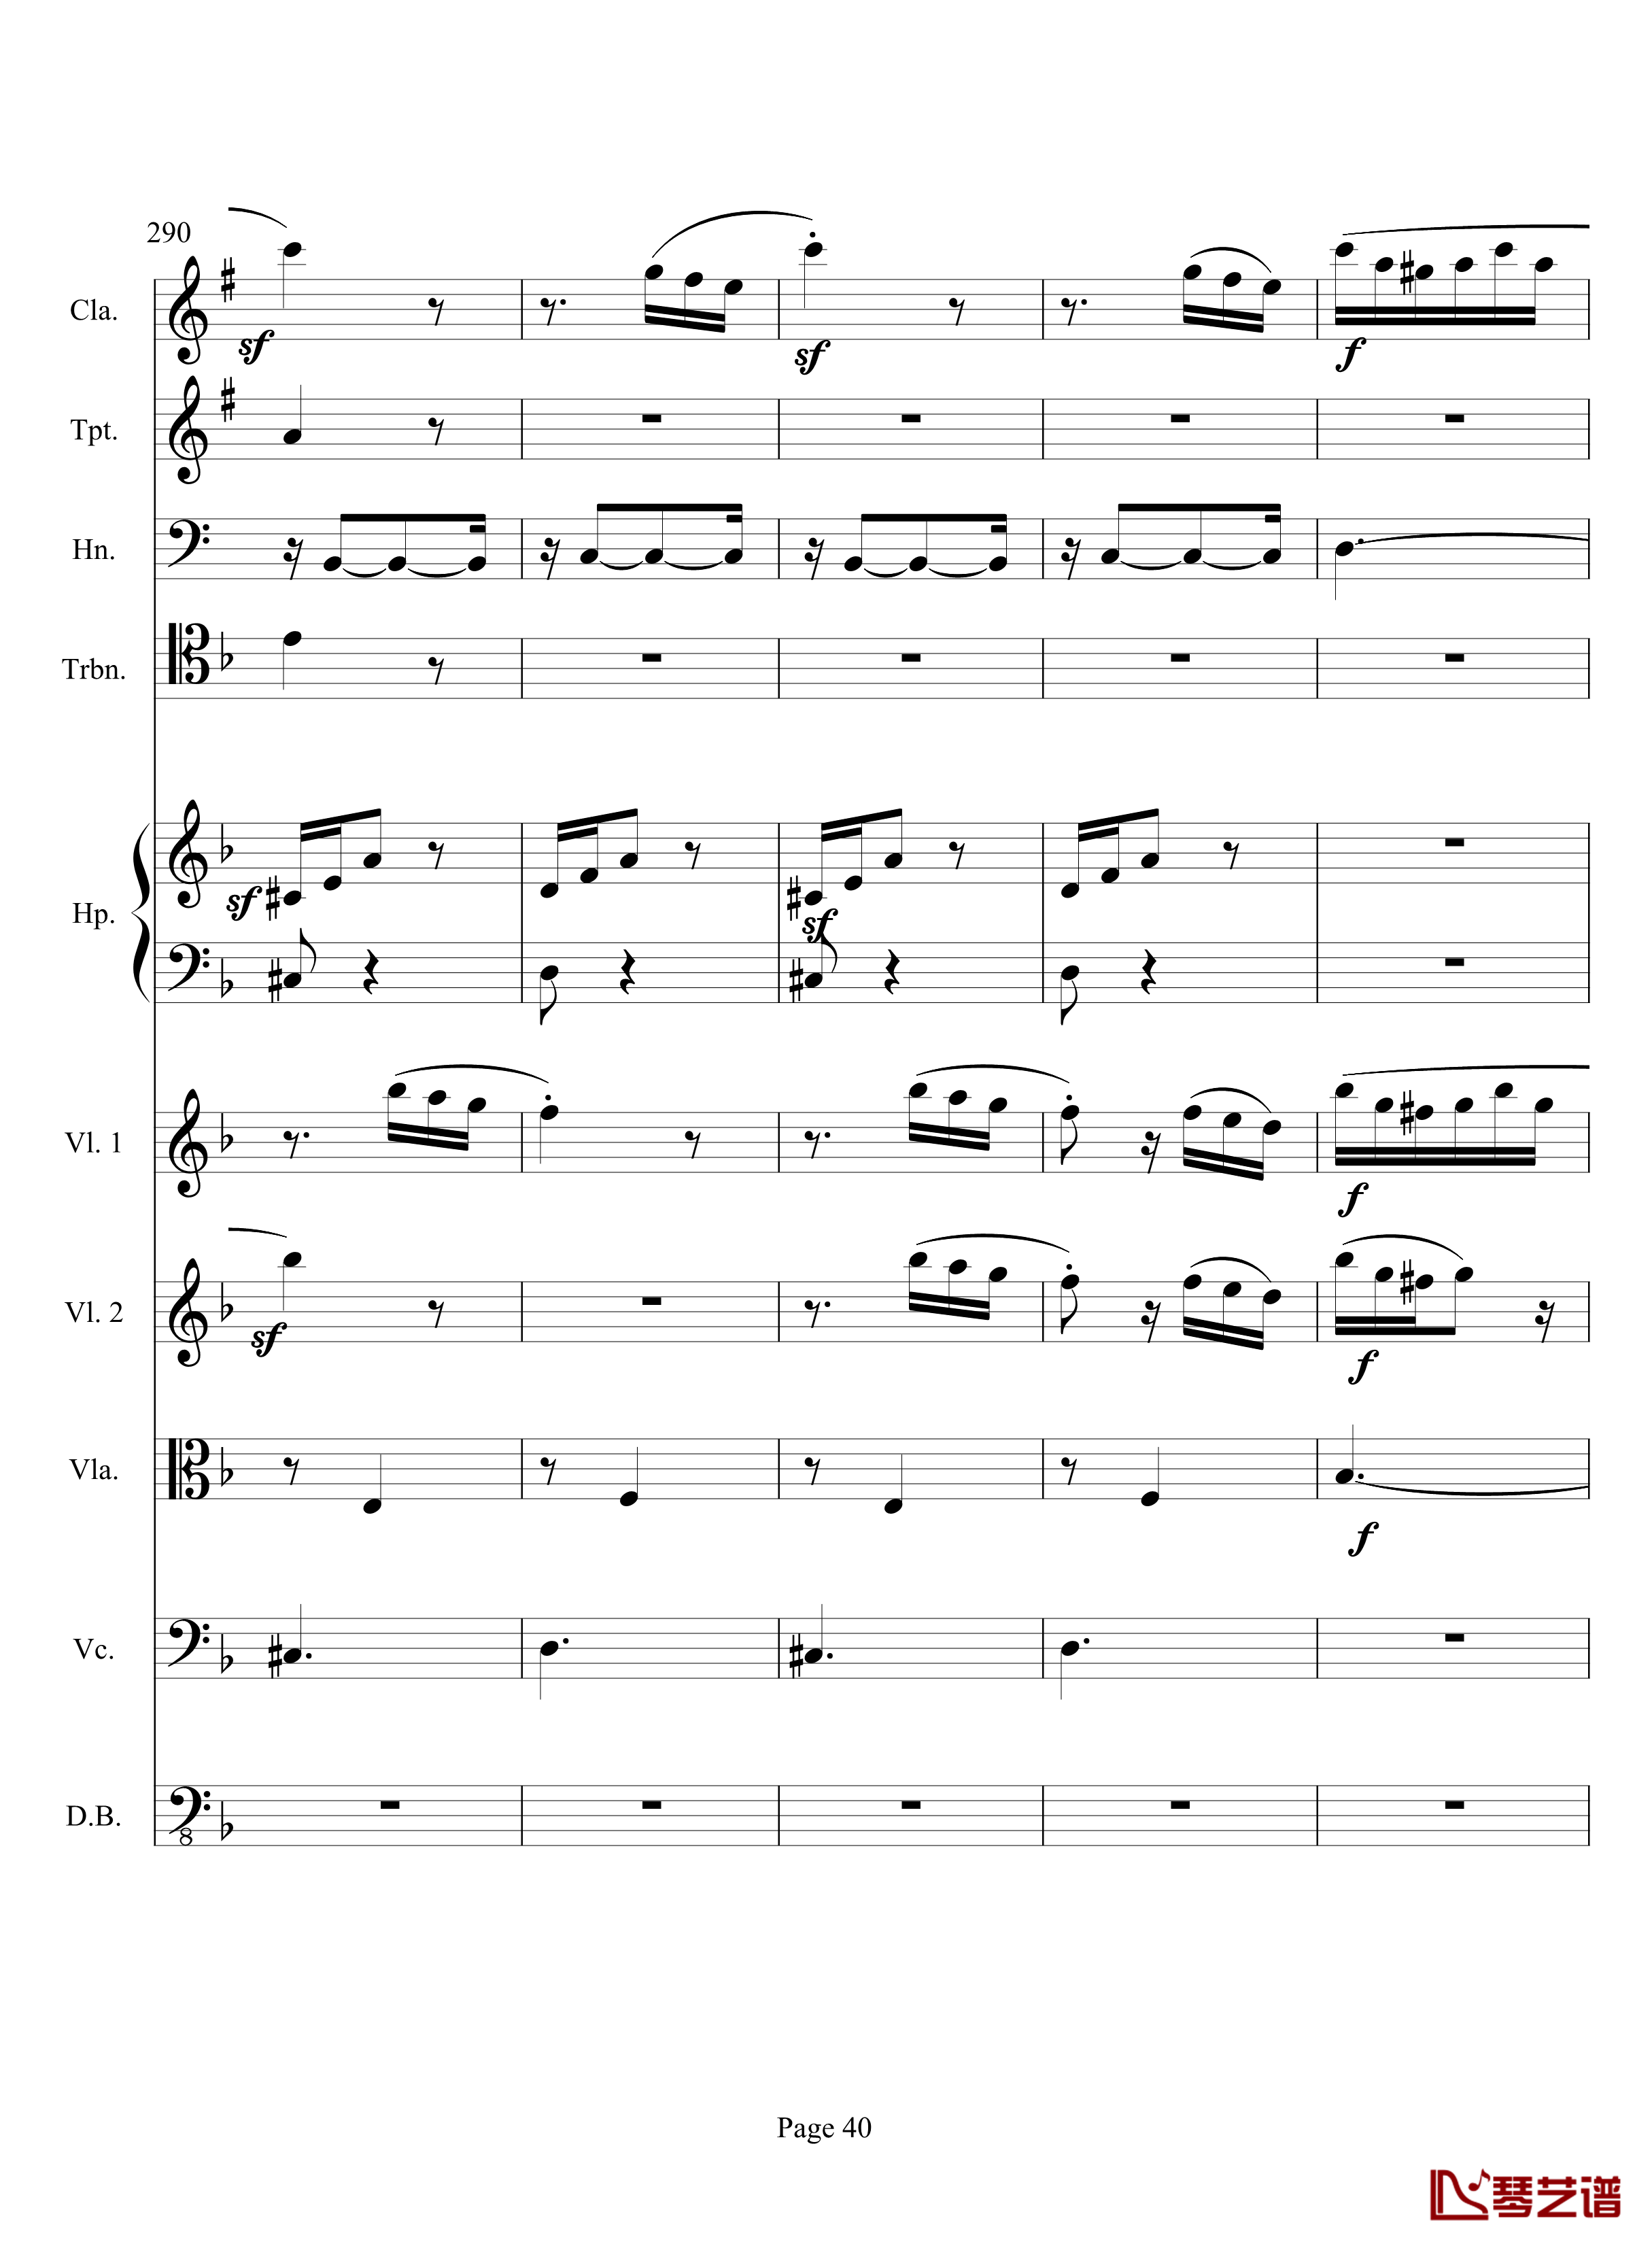 奏鸣曲之交响钢琴谱-第17首-Ⅲ-贝多芬-beethoven40